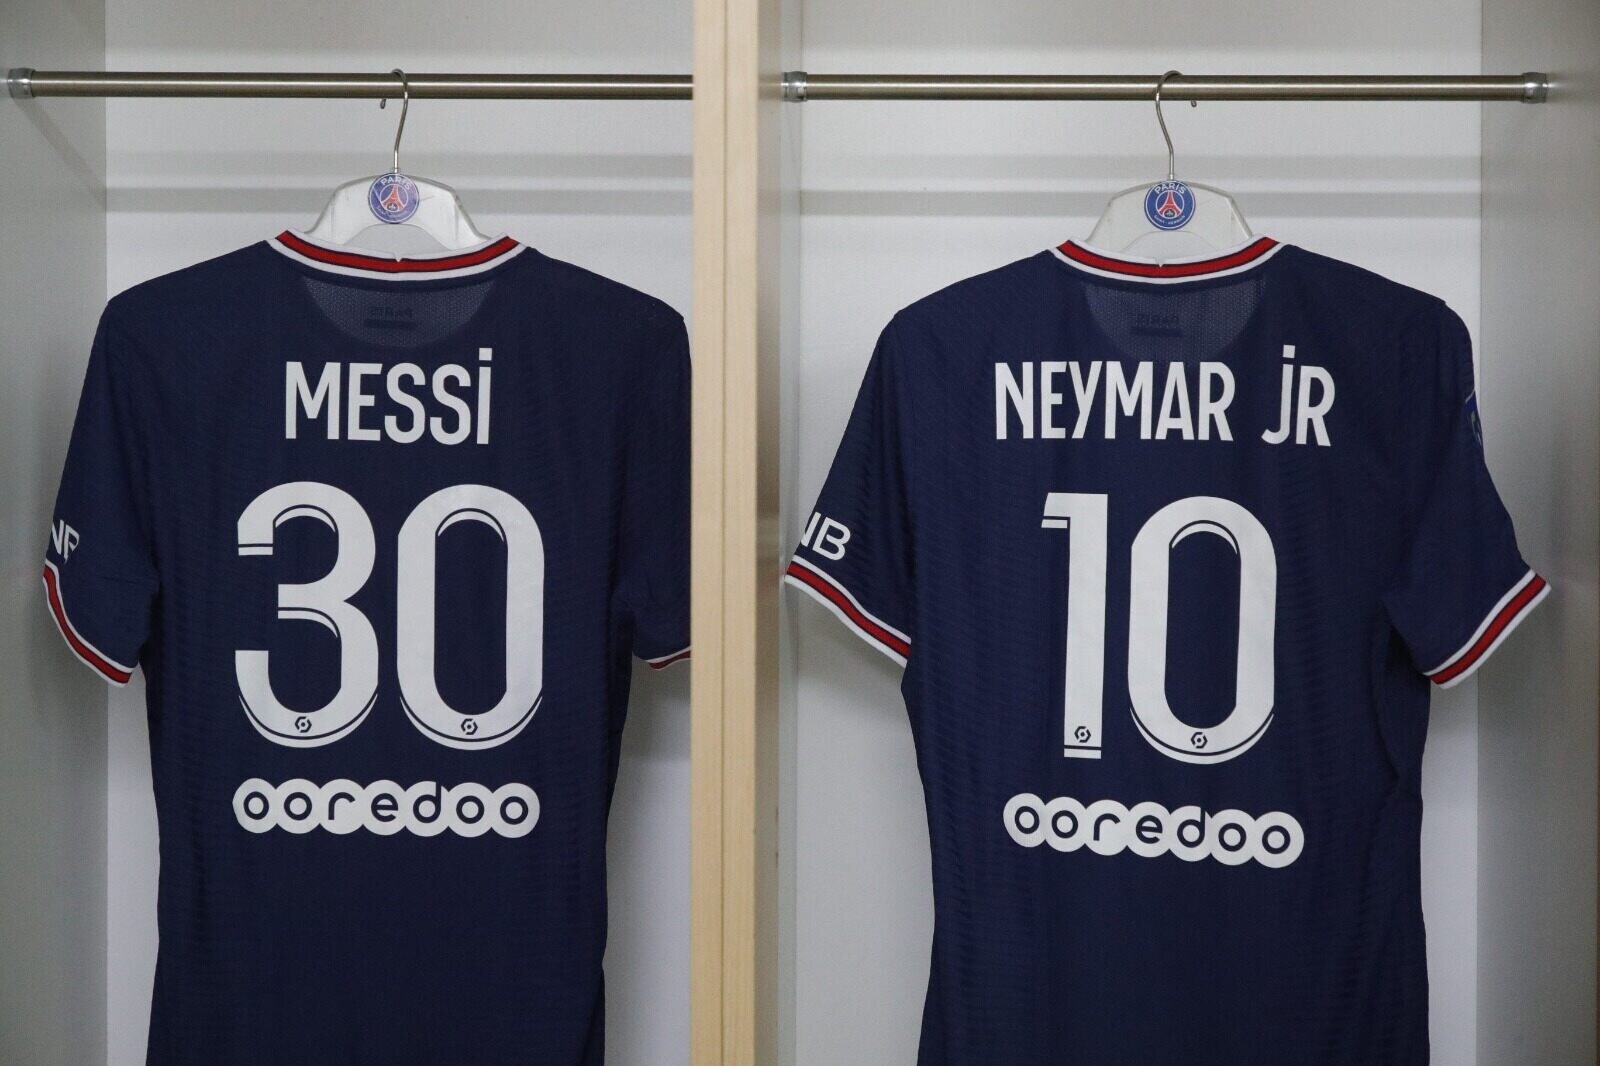 Reims x PSG AO VIVO: Veja onde assistir a estreia de Messi com Neymar